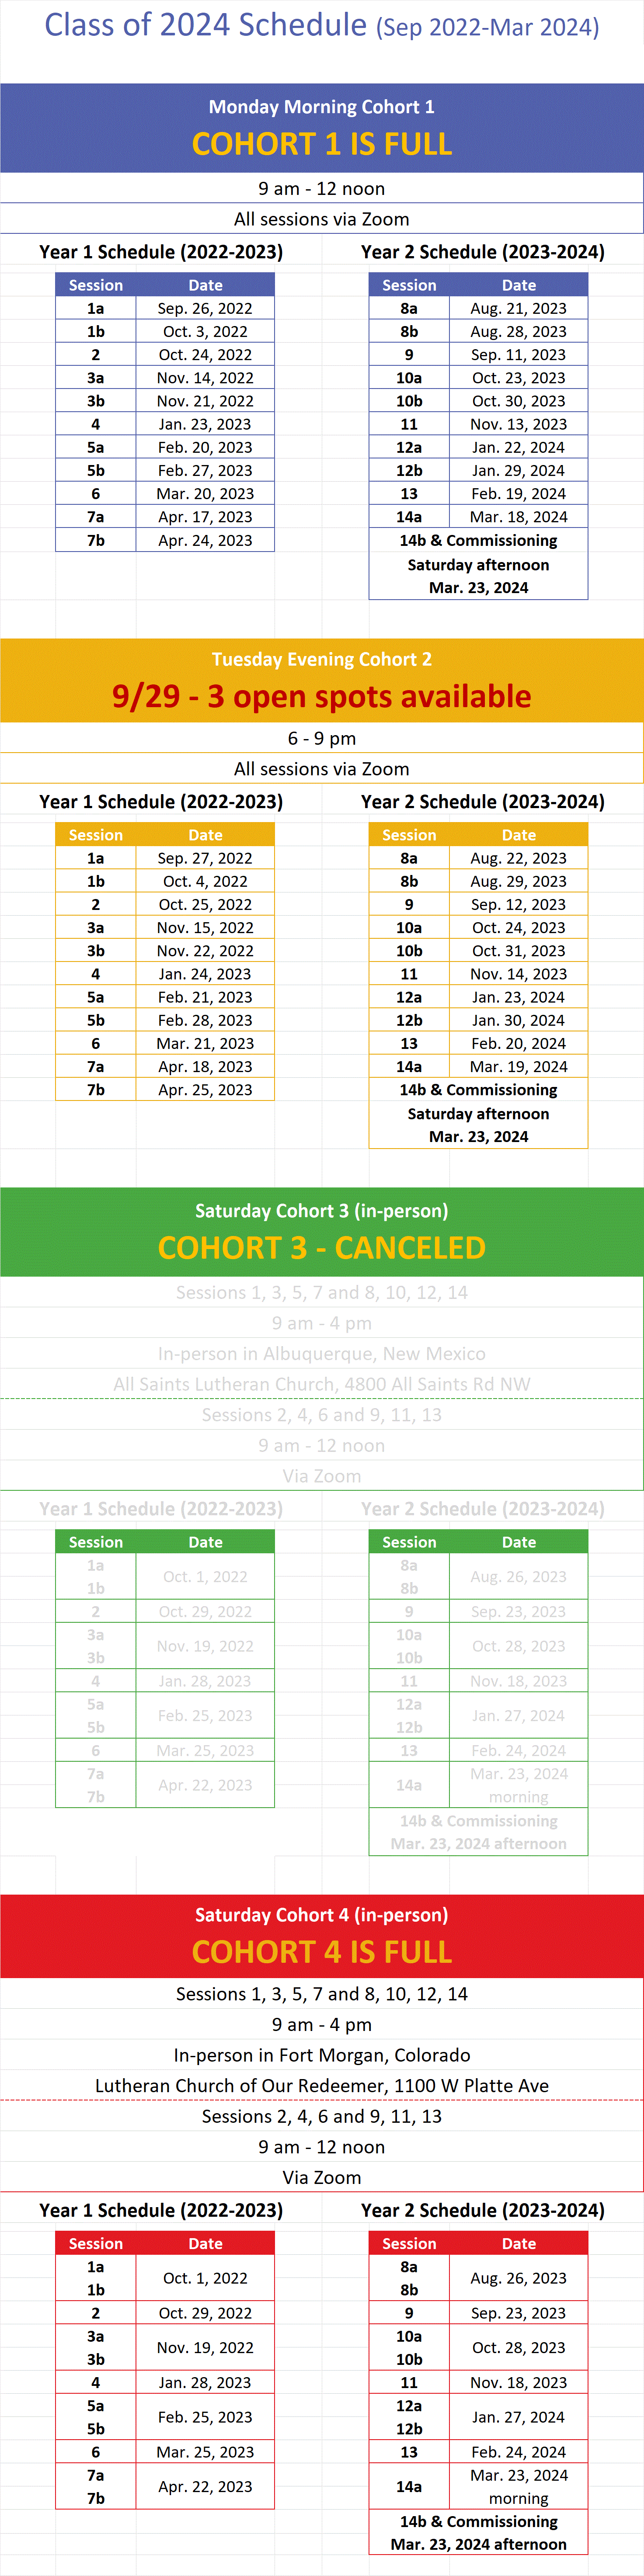 c2024_-_2-yr_schedule_-_updated_9-29-2022.gif